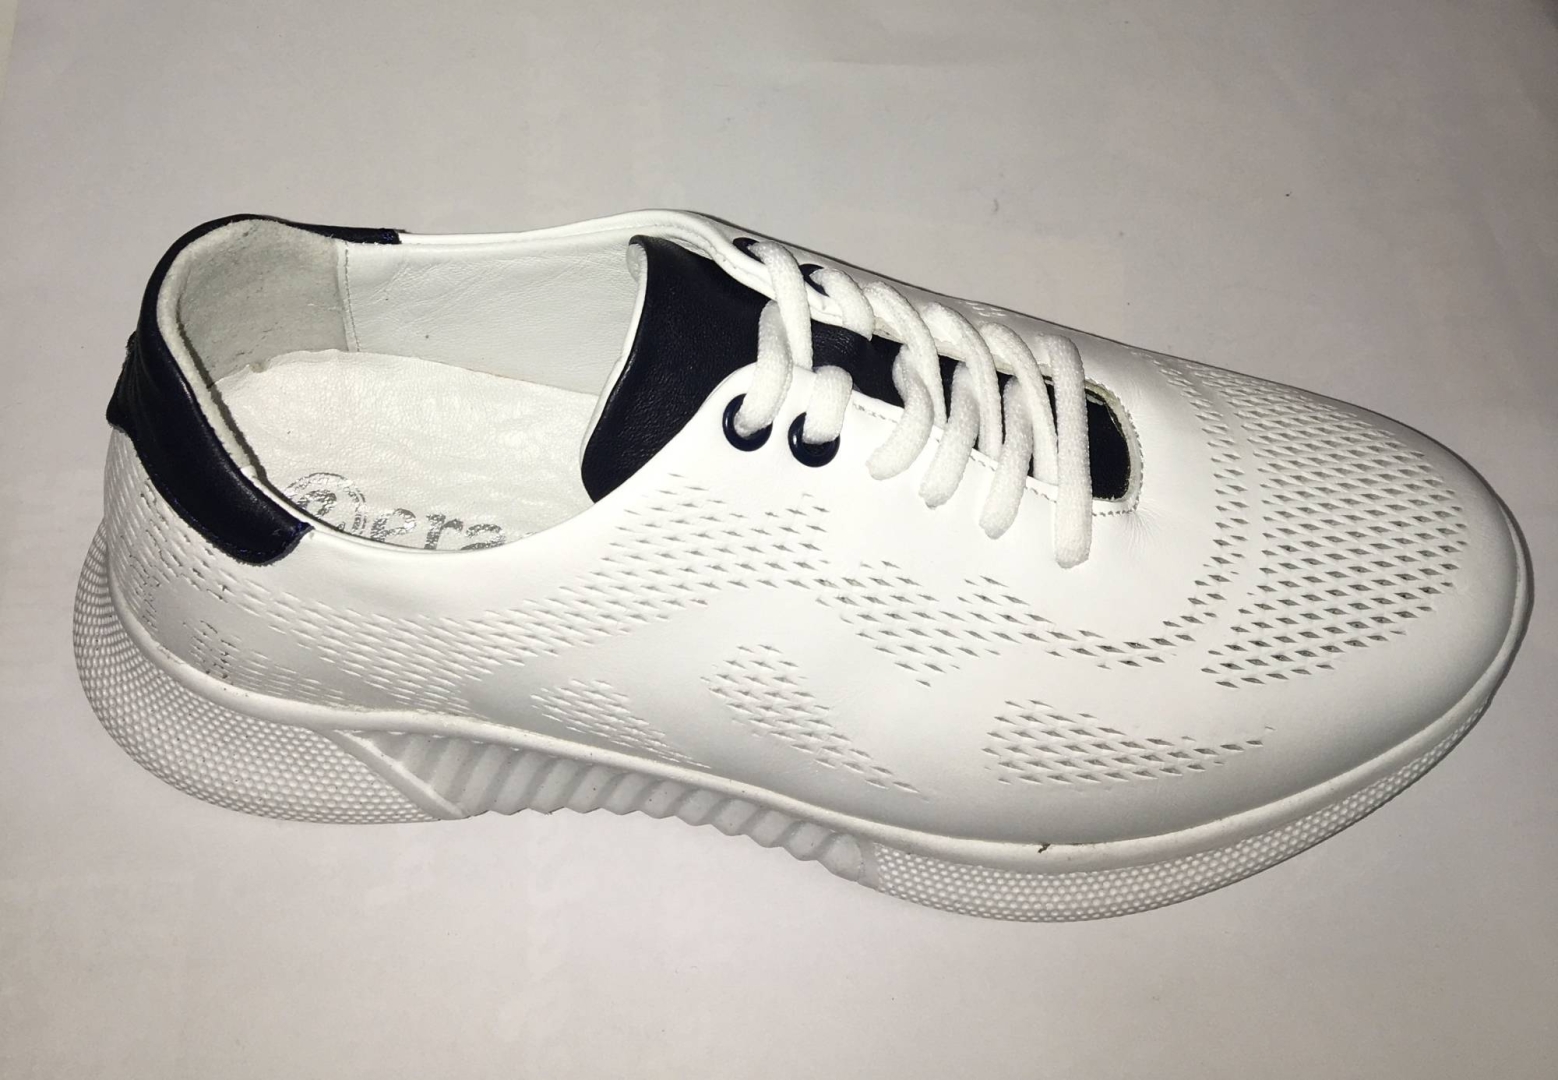 Zapato deportivo para hombre en piel, color blanco de ERASESHOES. H-322